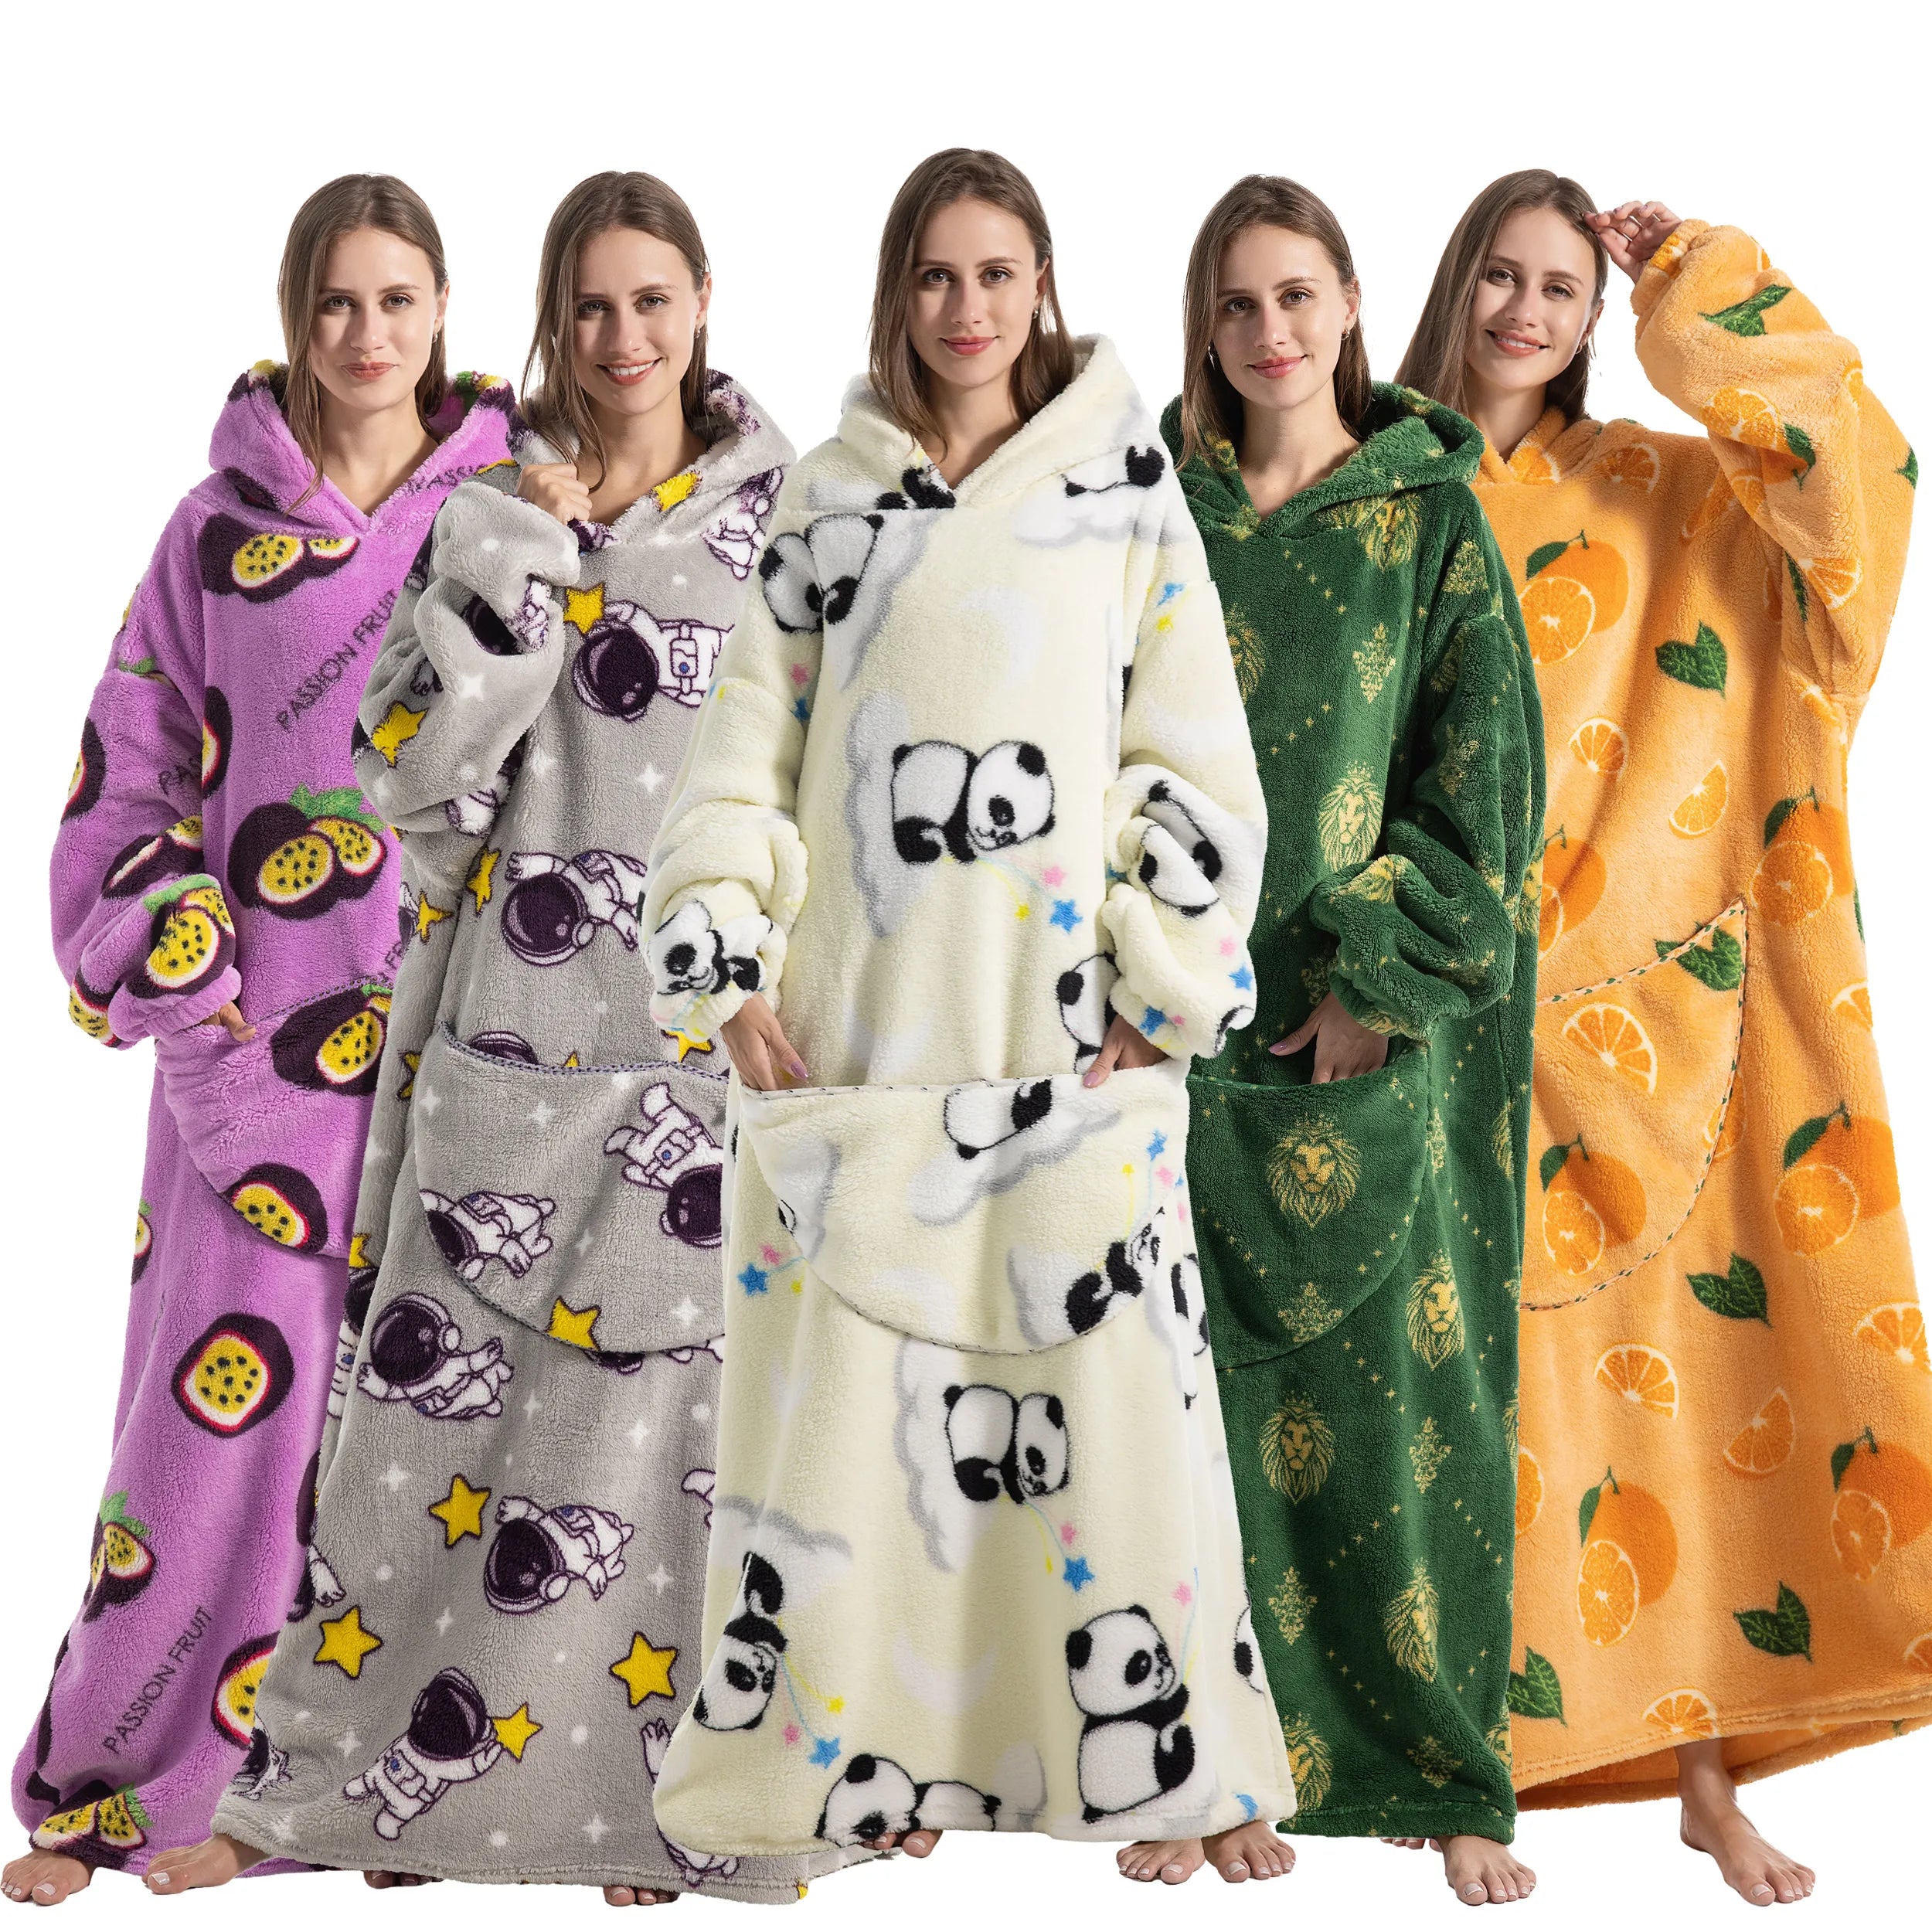 New Oversized TV Wearable Blanket Extra Long Warm Plush Fleece Winter Sherp Hoodie Men Women Soft Sweatshirt Gifts